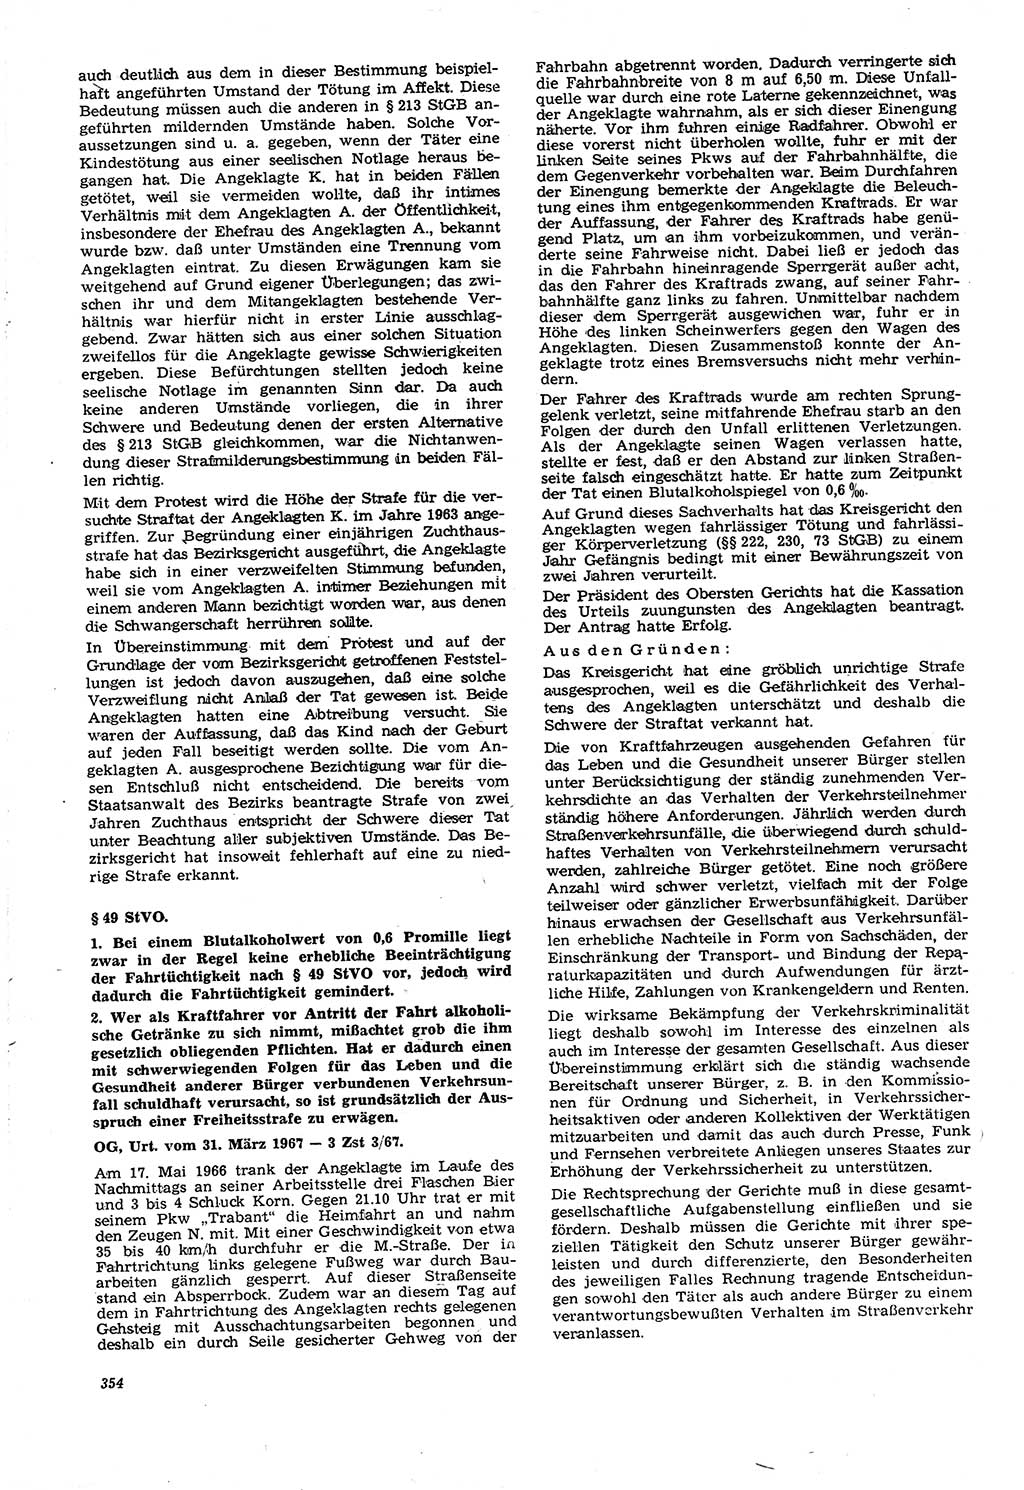 Neue Justiz (NJ), Zeitschrift für Recht und Rechtswissenschaft [Deutsche Demokratische Republik (DDR)], 21. Jahrgang 1967, Seite 354 (NJ DDR 1967, S. 354)